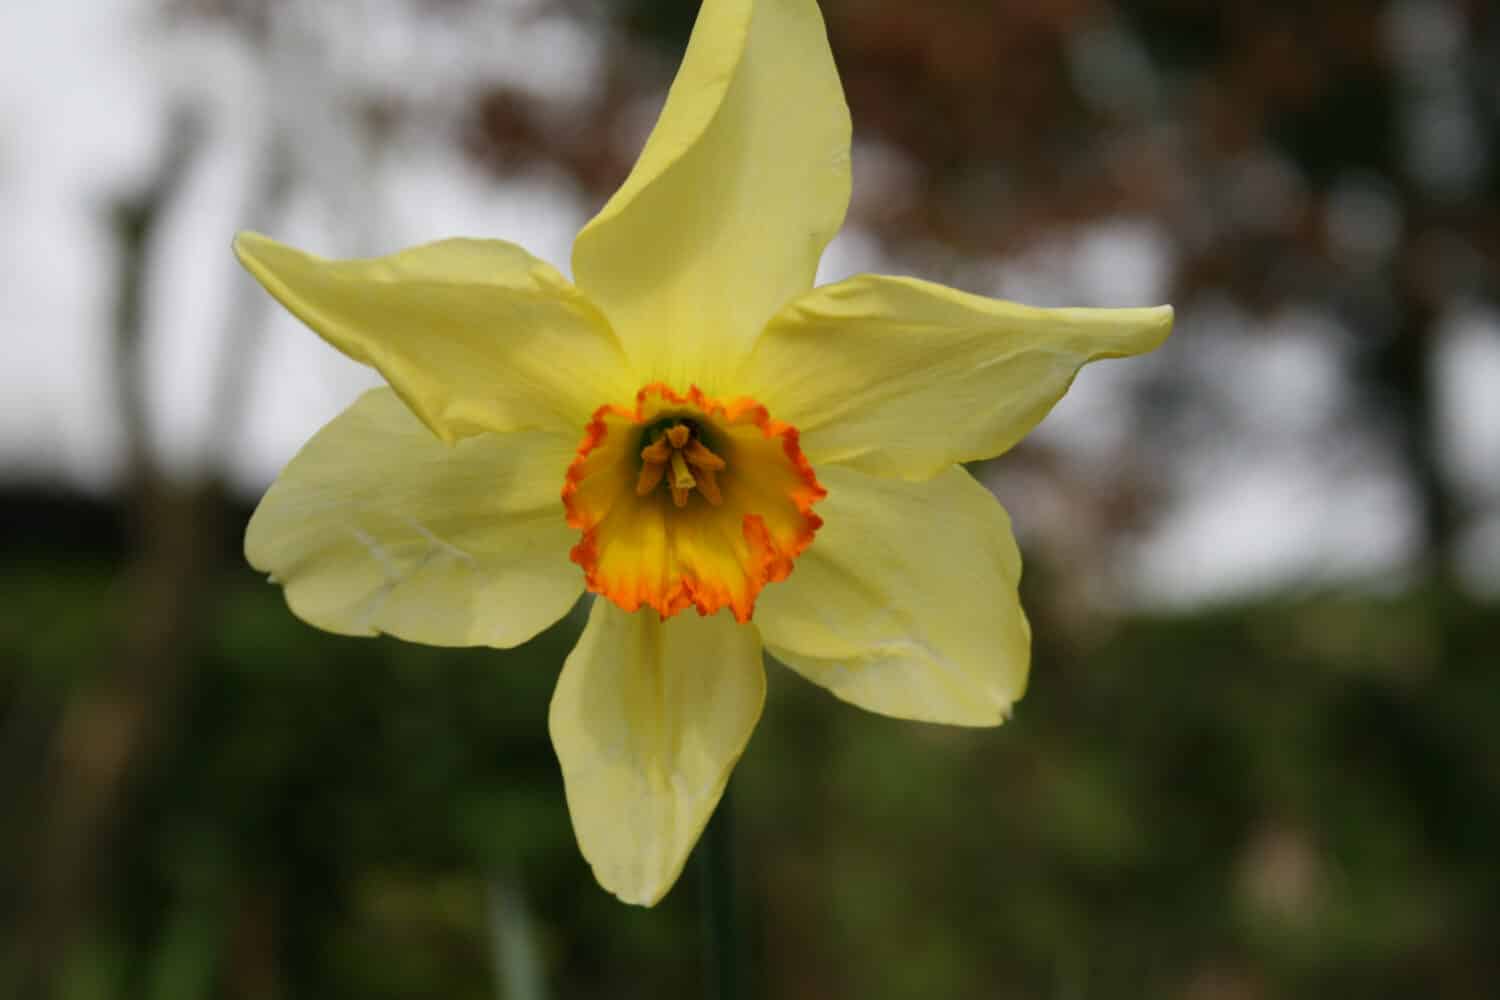 Specie di narciso in fiore 'fiamma del bagno'